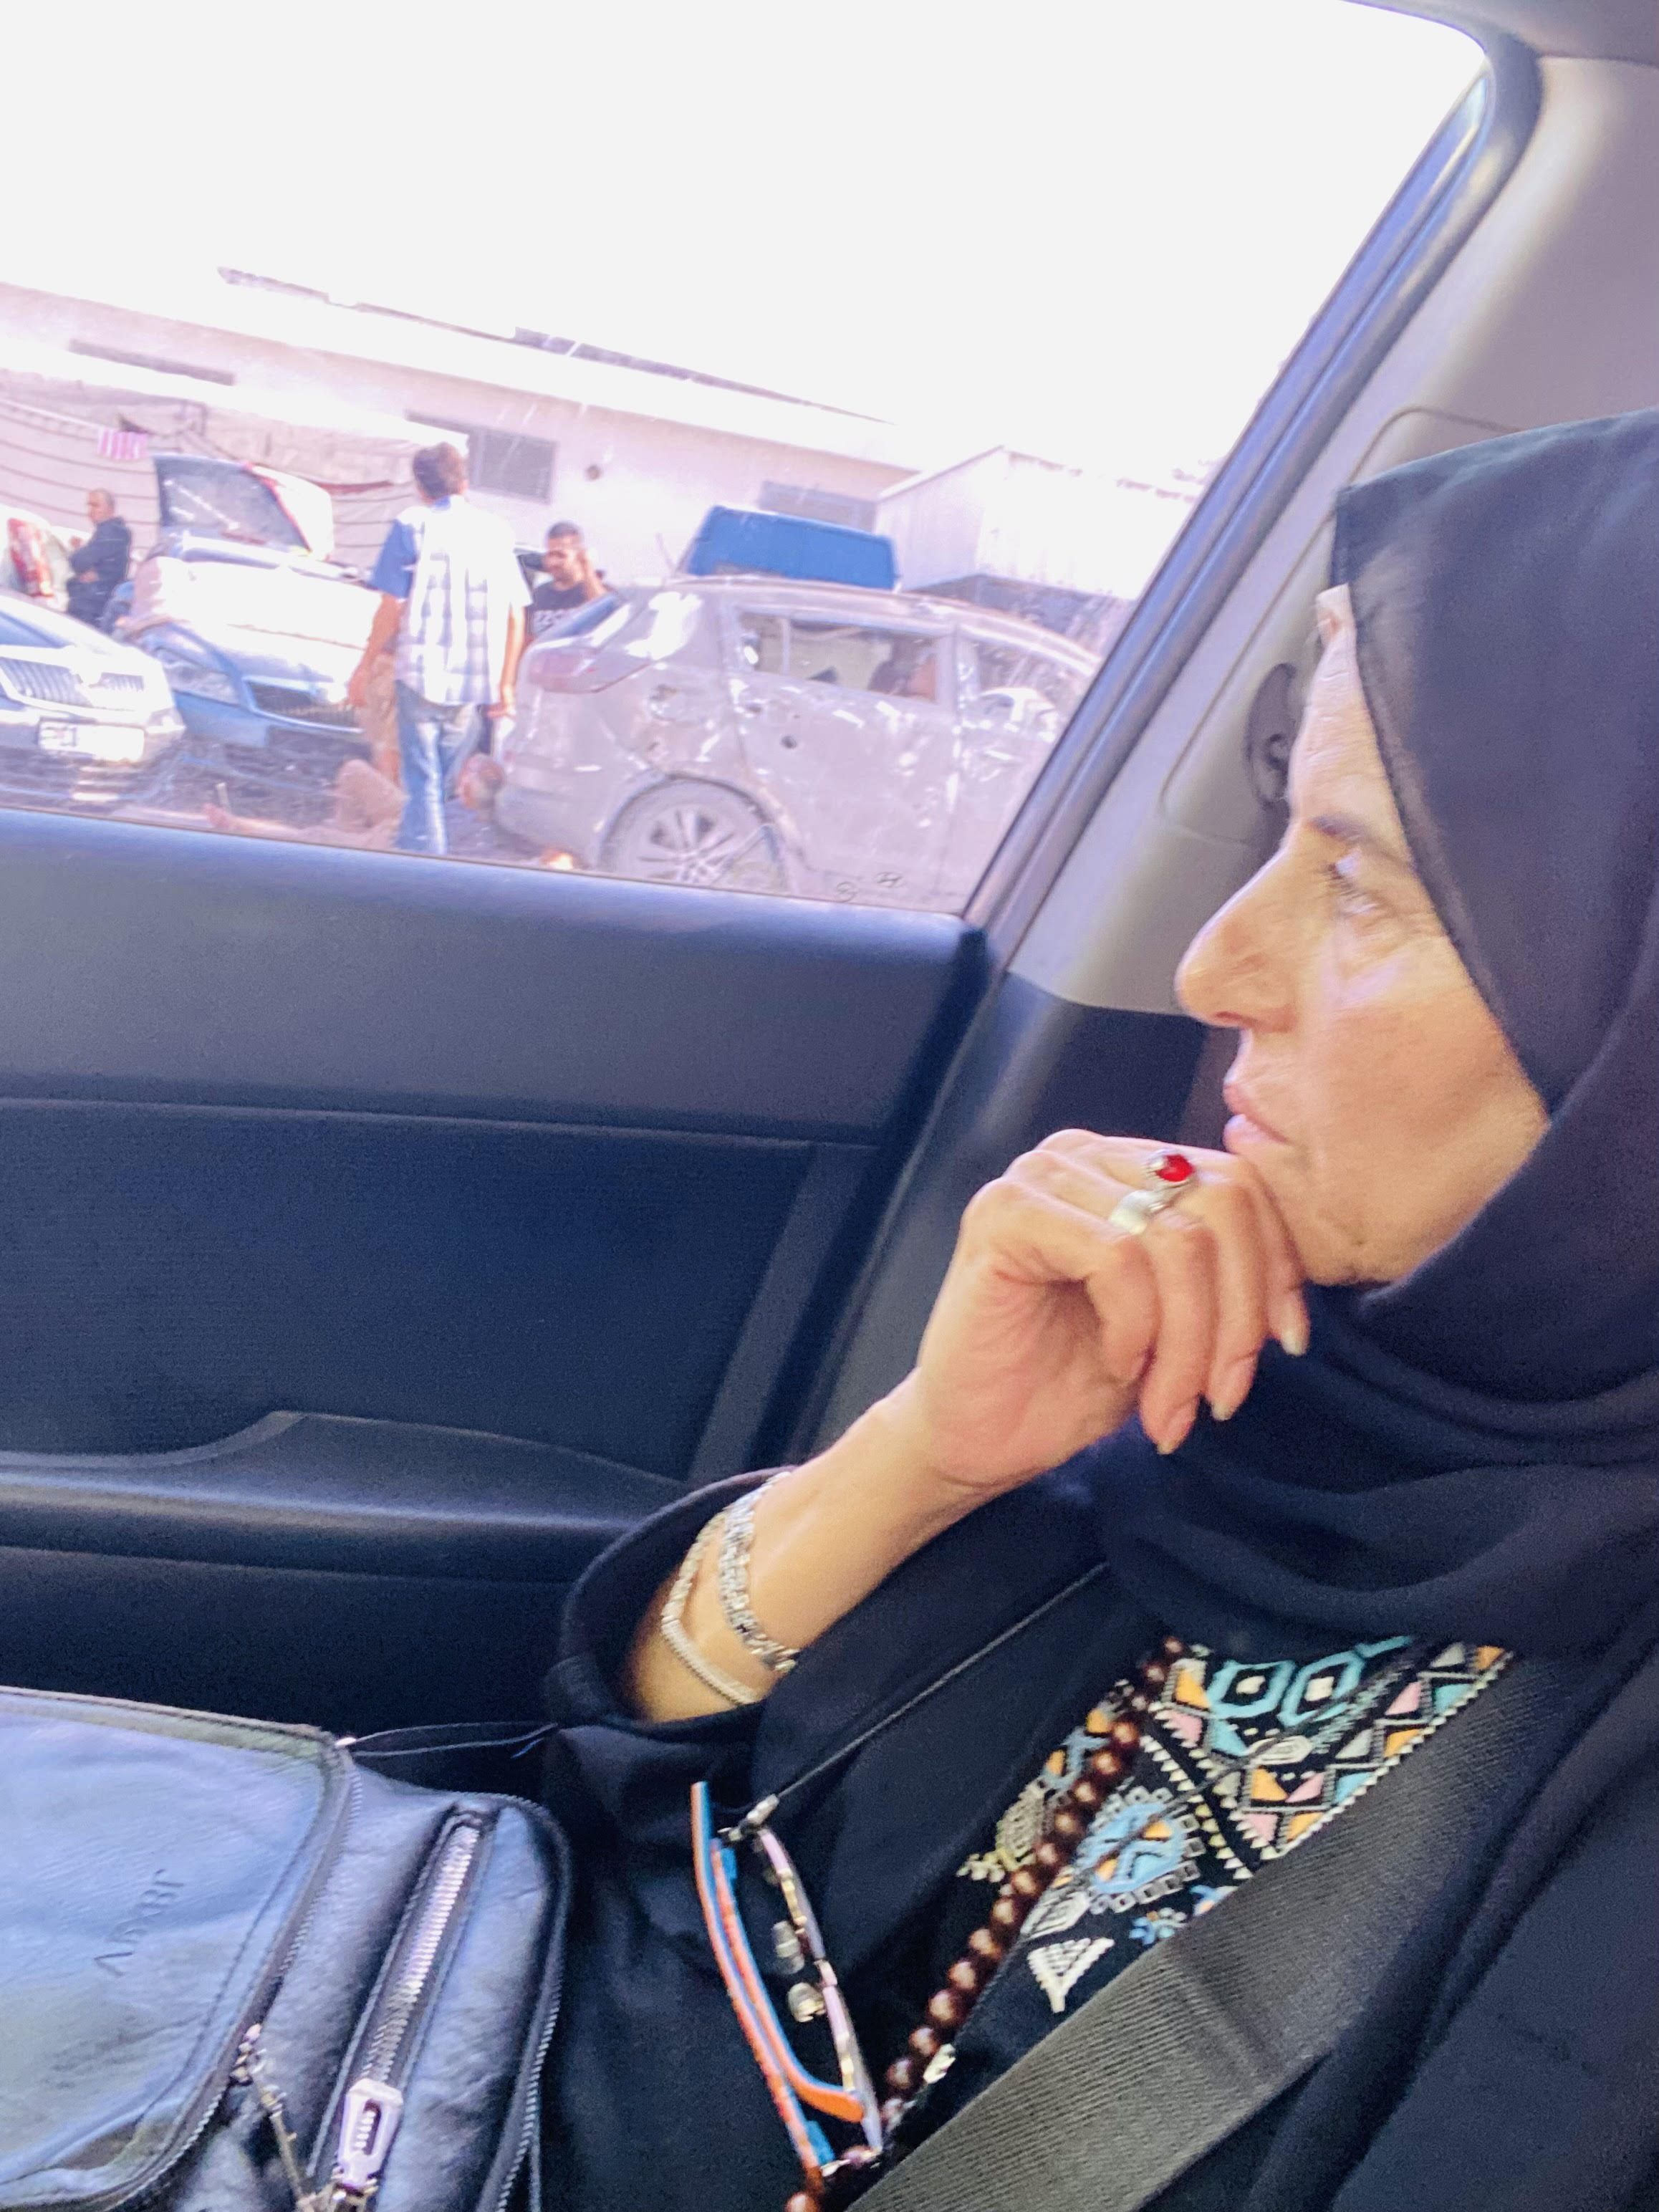  للشهر العاشر على التوالي تتنقل ماجدة قديح نازحة وحيدة في سيارتها الخاصة -أحلام حماد-الترا فلسطين.jpg